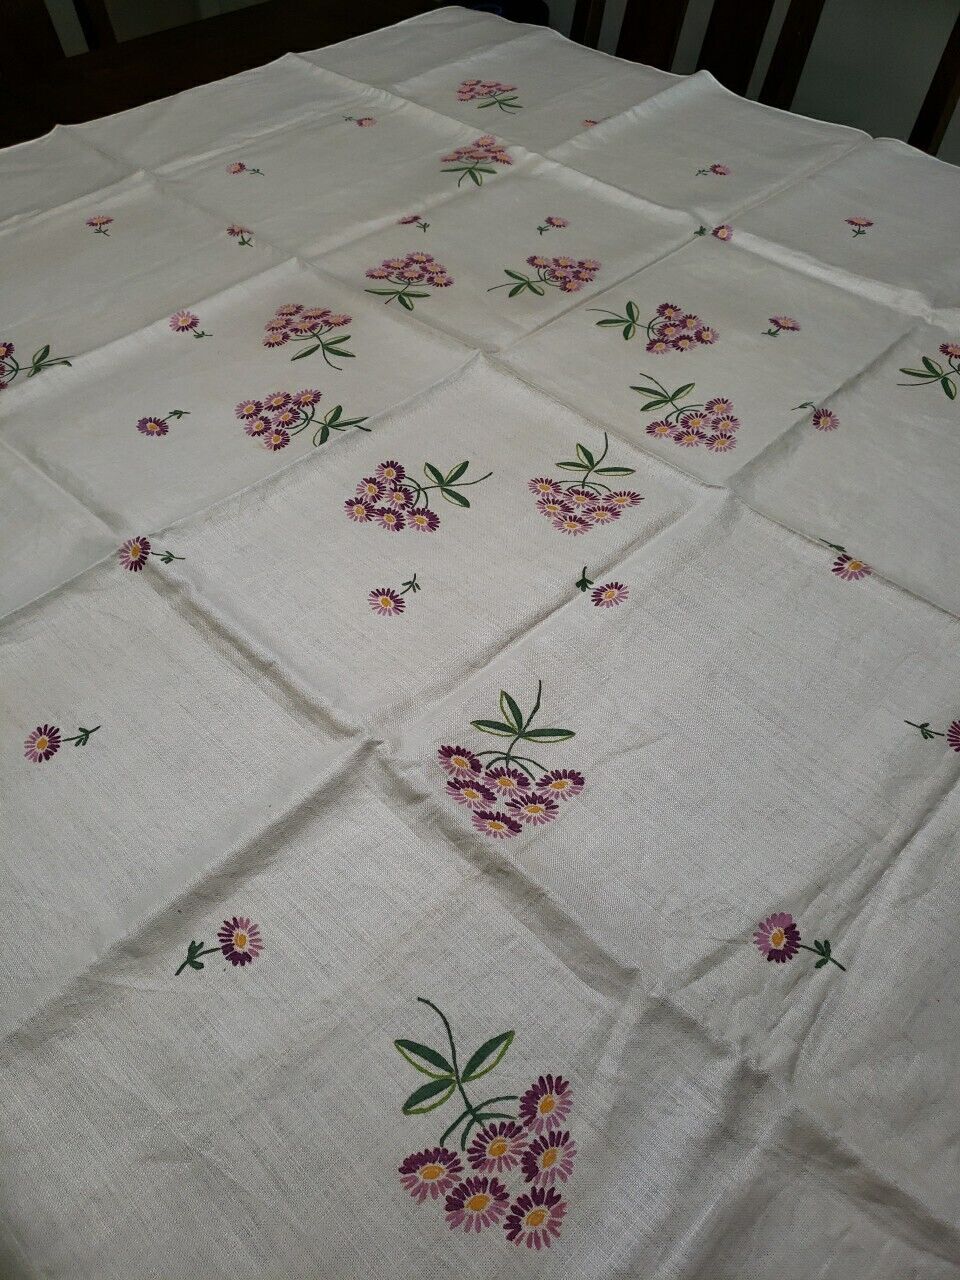 Vintage Hand Painted Tablecloth 92 x 56 Floral Linen Cotton Oblong 8 Napkins 